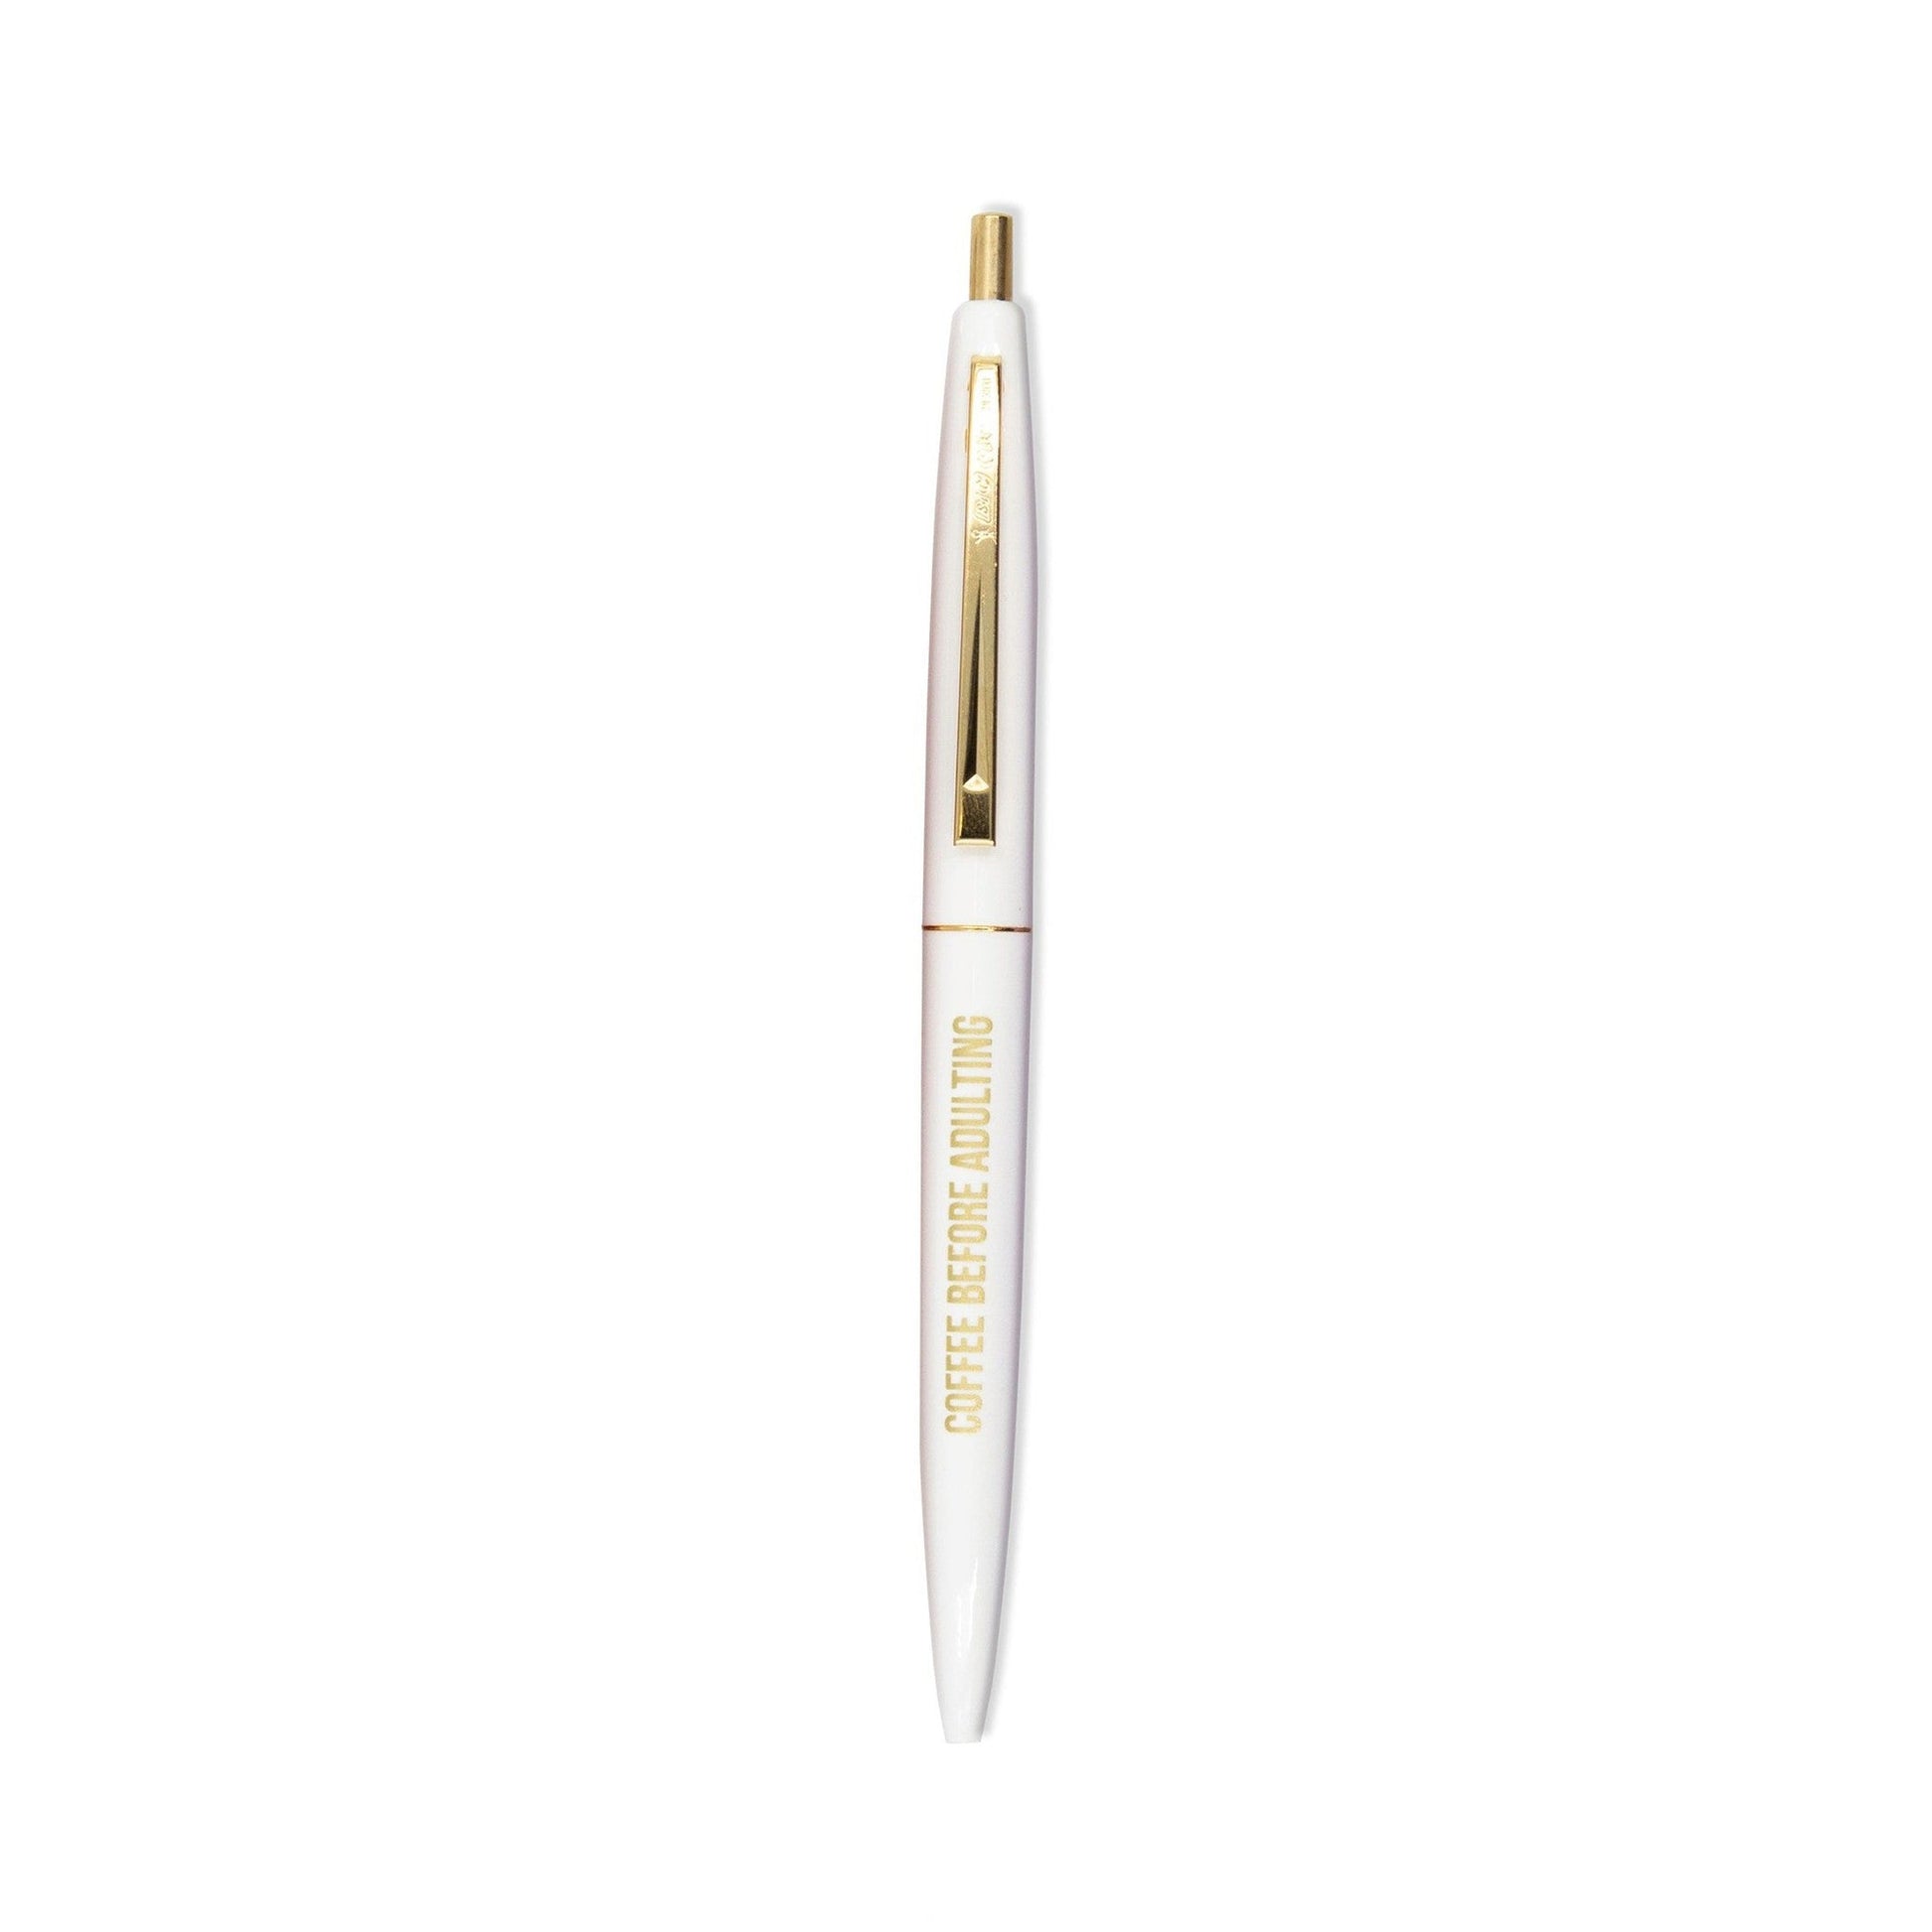 https://shop.getbullish.com/cdn/shop/files/Snarky-Boss-Lady-Pen-Set-in-Brilliant-Multicolor-Set-of-6-Pens-7.jpg?v=1699311610&width=1946